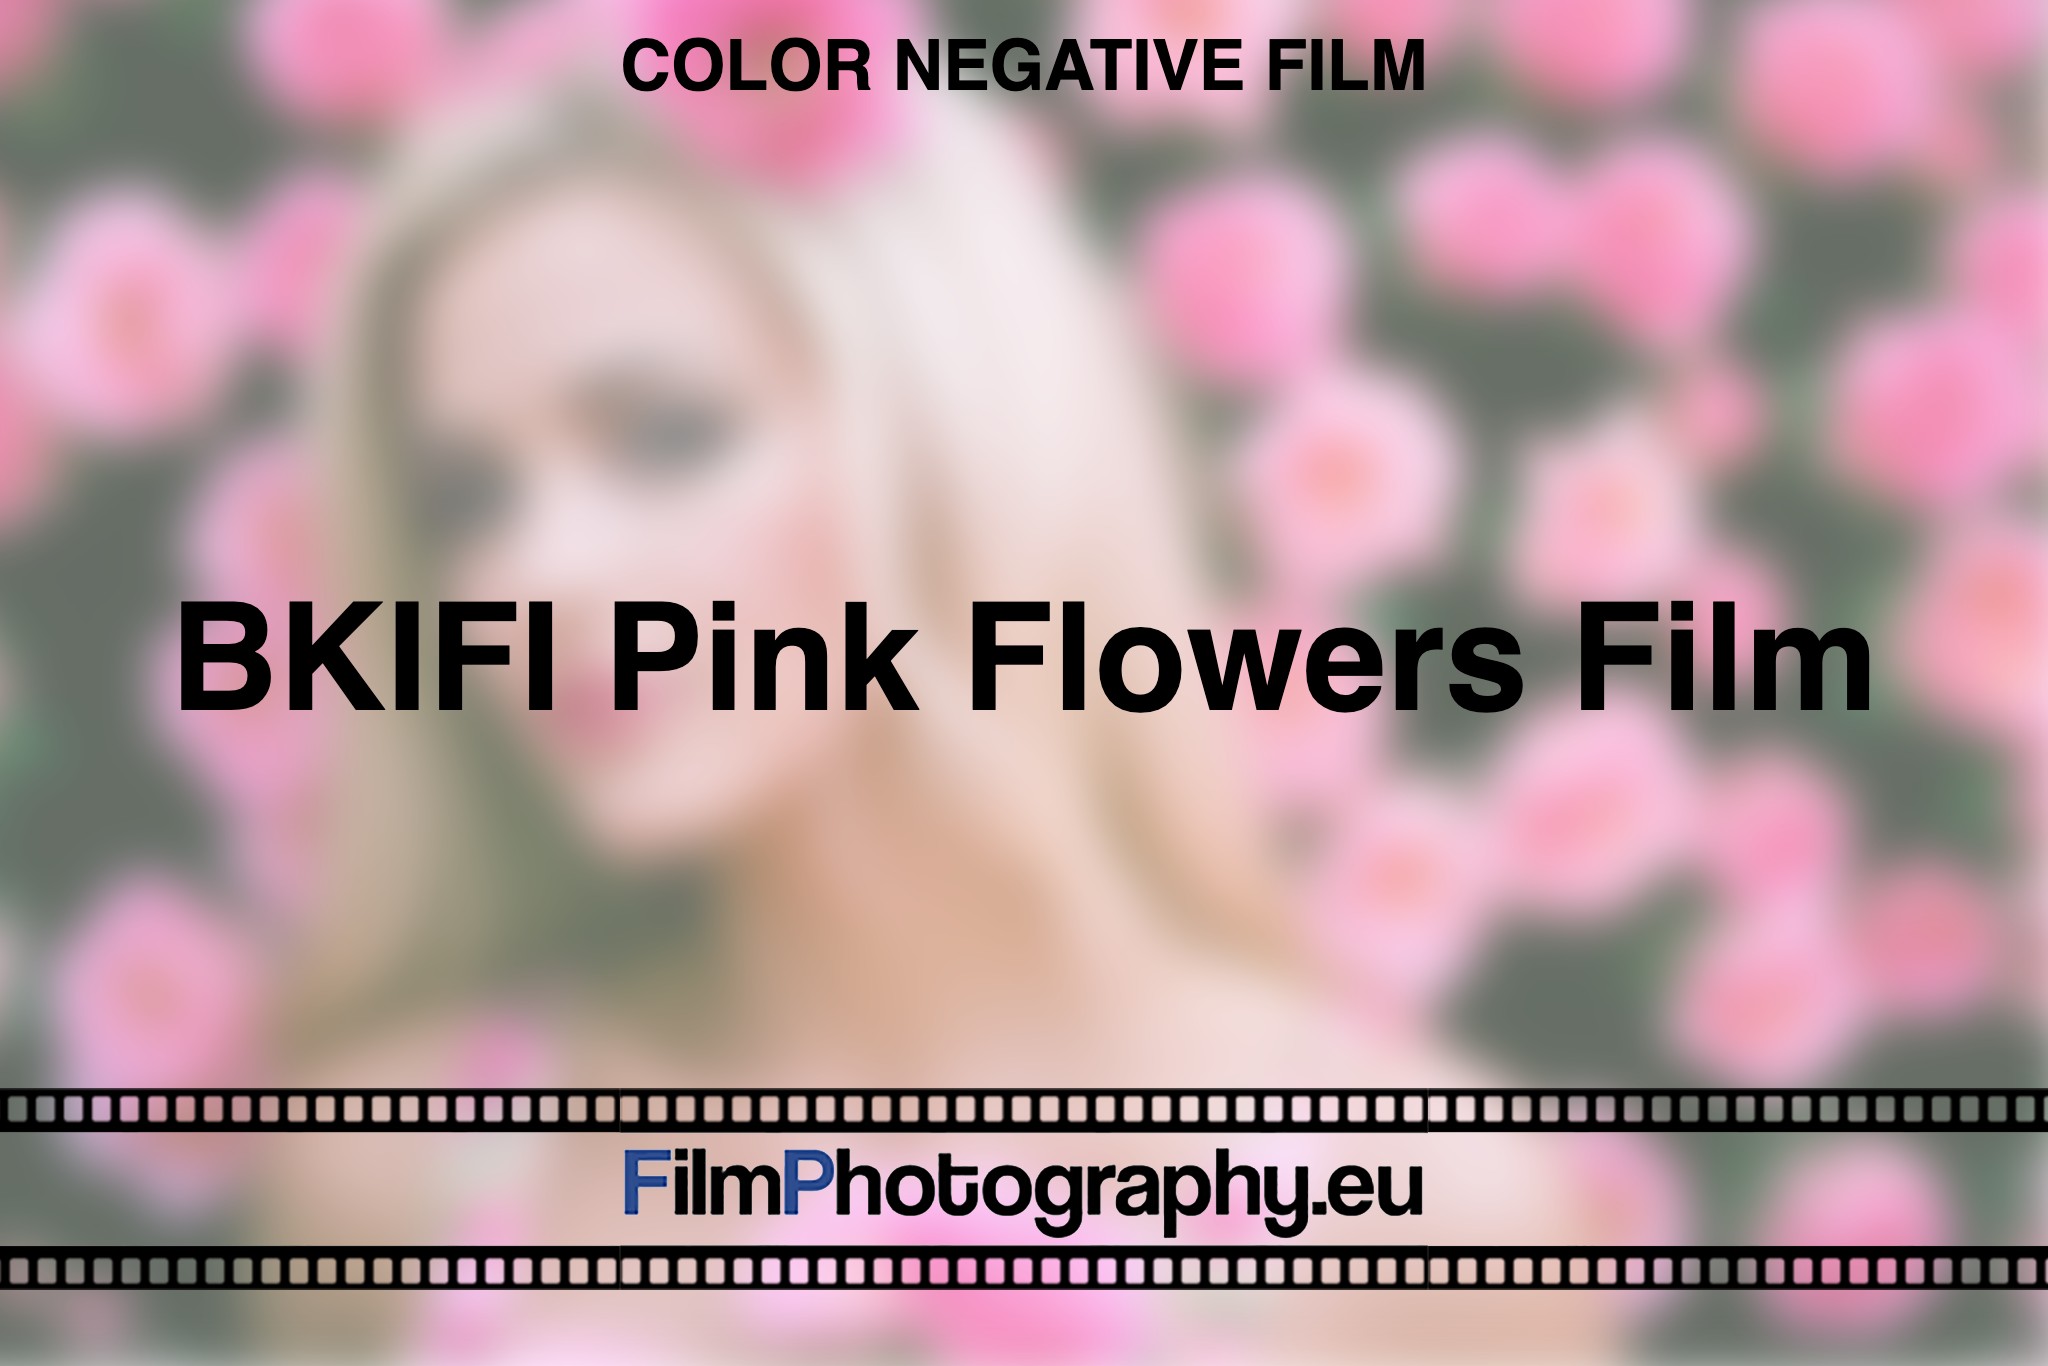 BKIFI-Pink-Flowers-Film-Color-negative-film-bnv